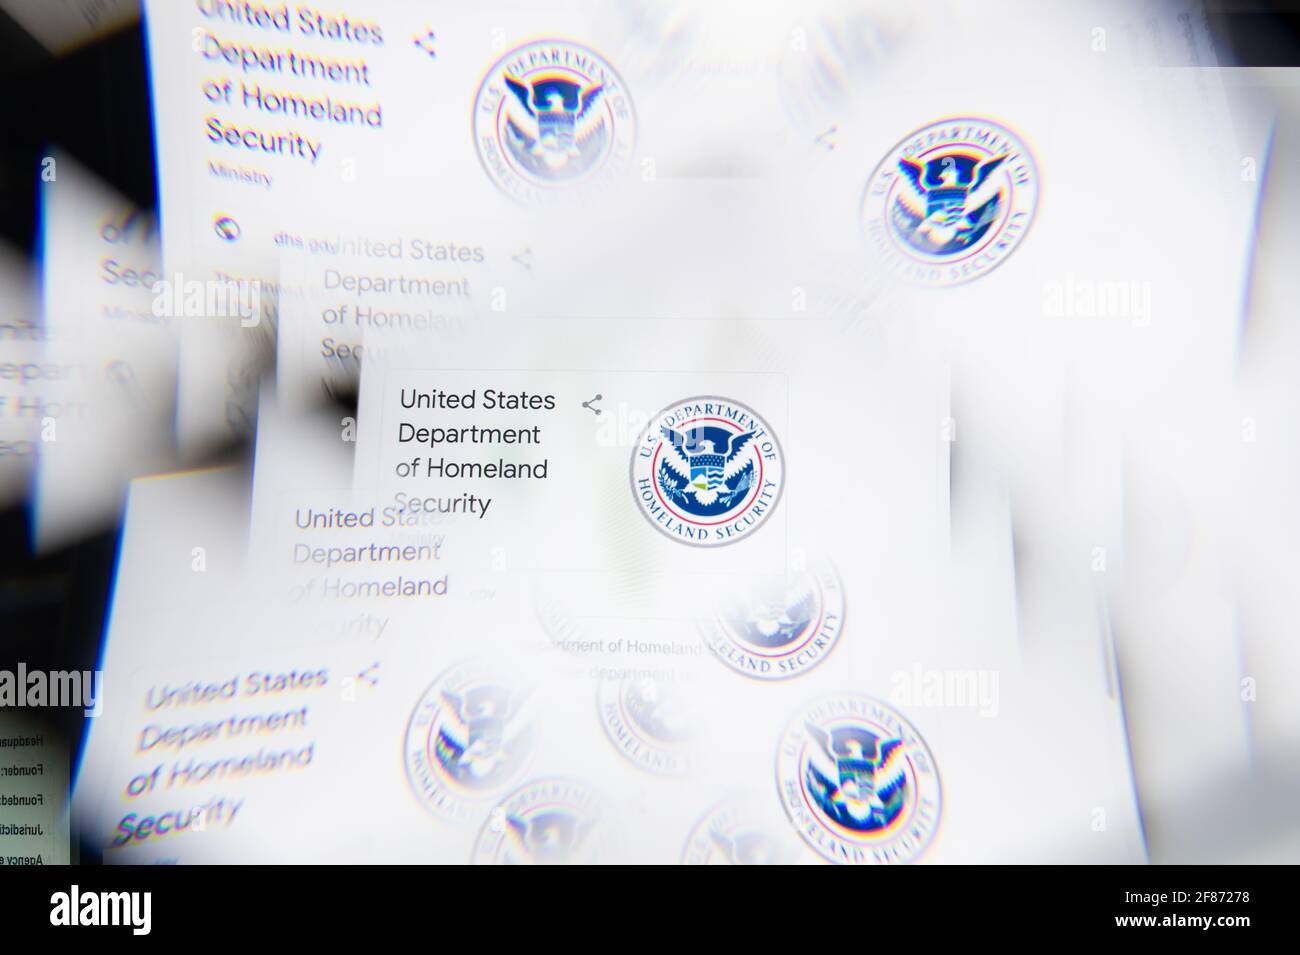 Mailand, Italien - 10. APRIL 2021: DHS-Logo auf dem Laptop-Bildschirm durch ein optisches Prisma gesehen. Illustratives redaktionelles Bild von der DHS-Website. Stockfoto